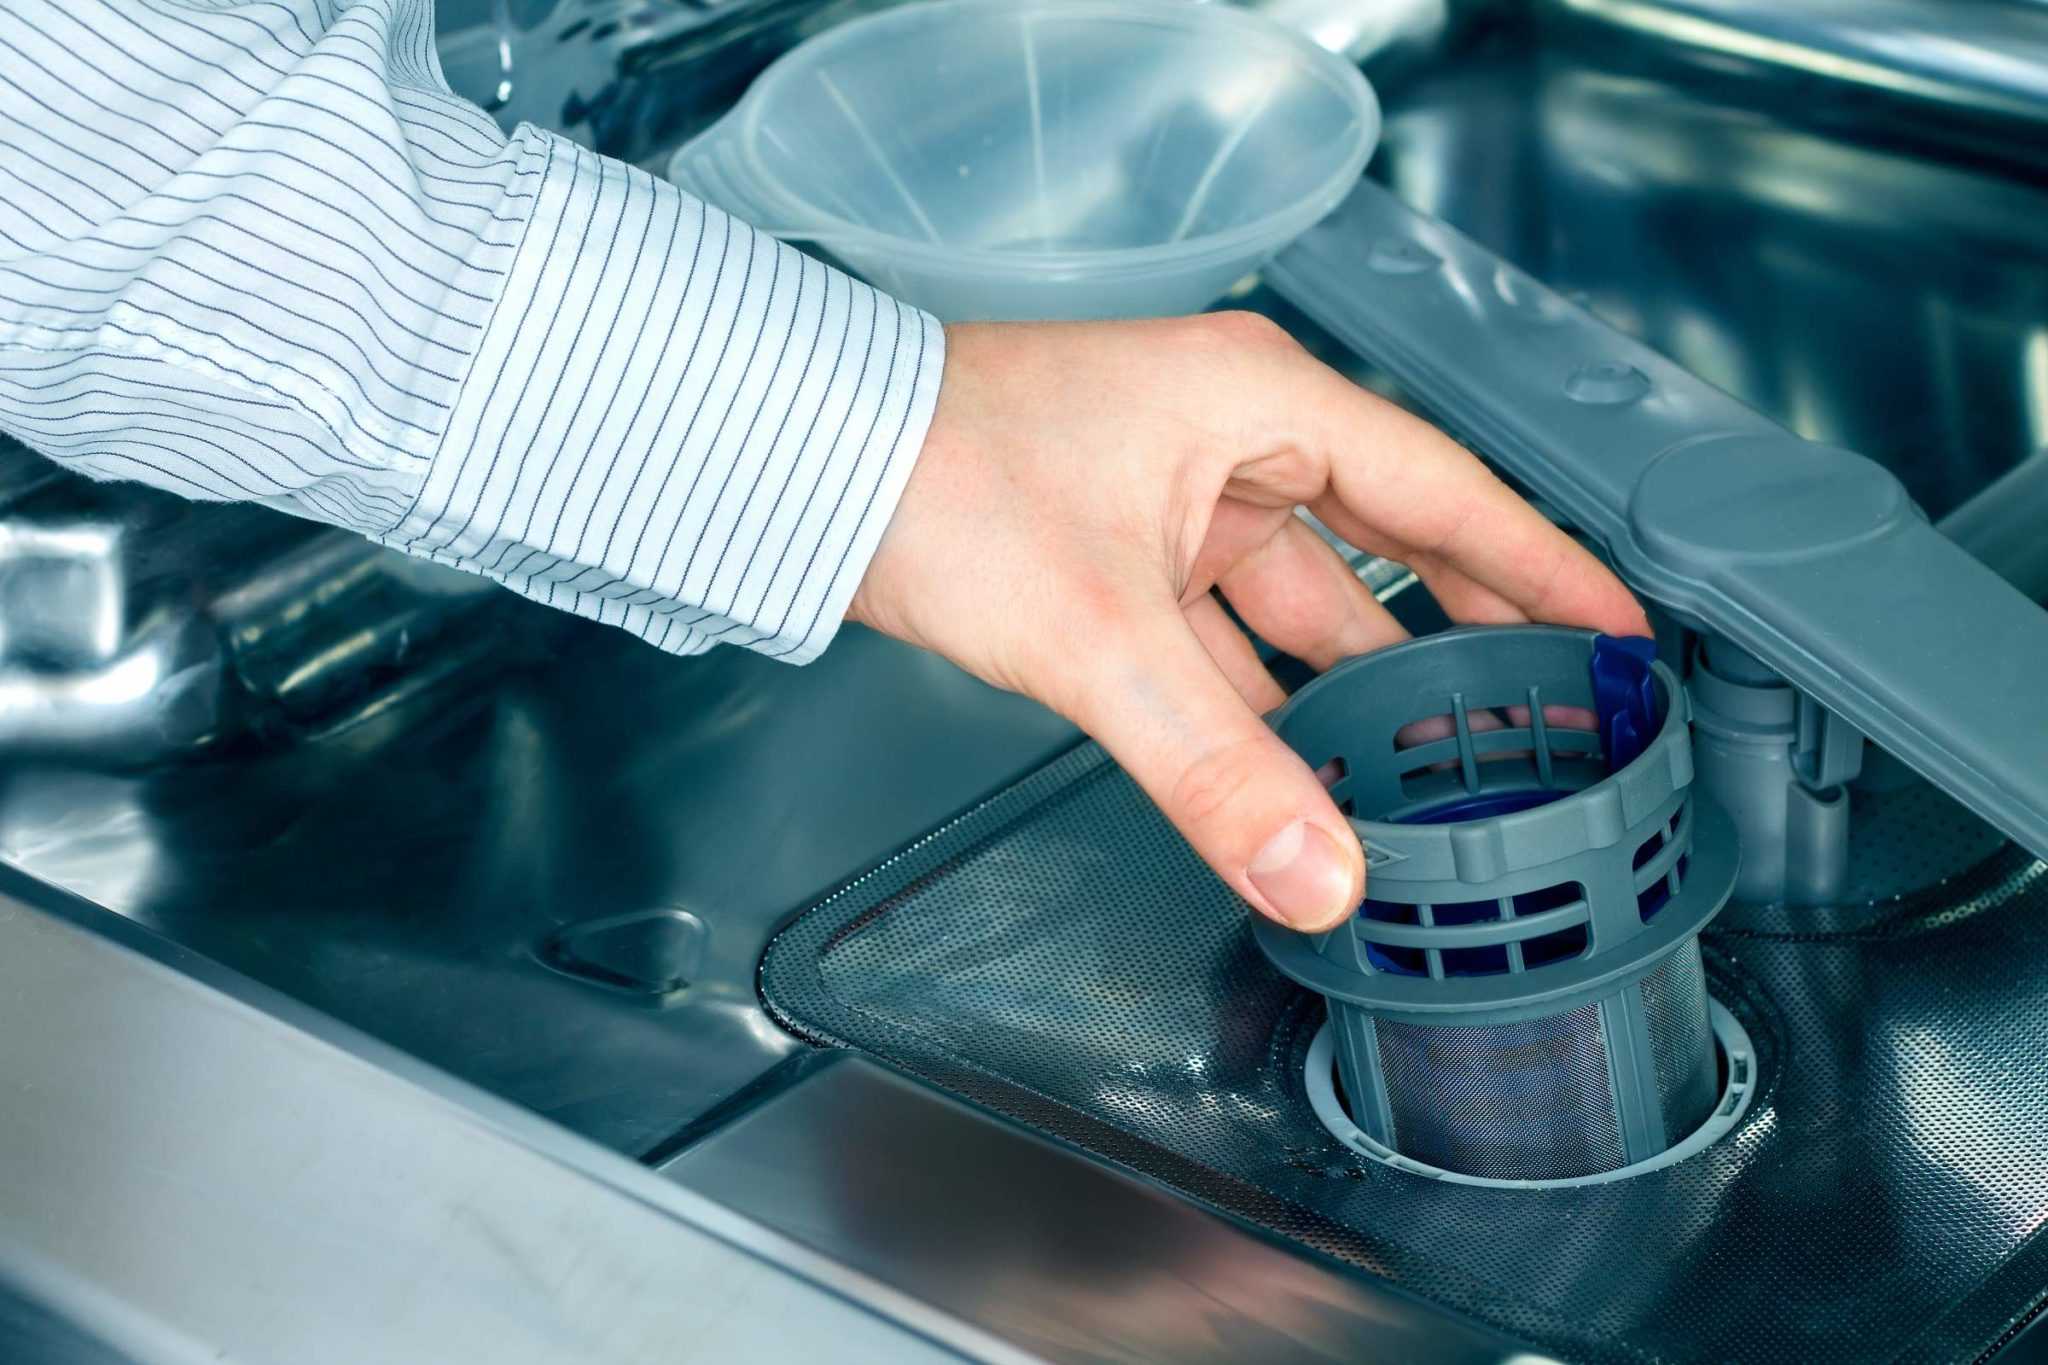 Очистка посудомоечной машины от накипи в домашних условиях: выбираем средства